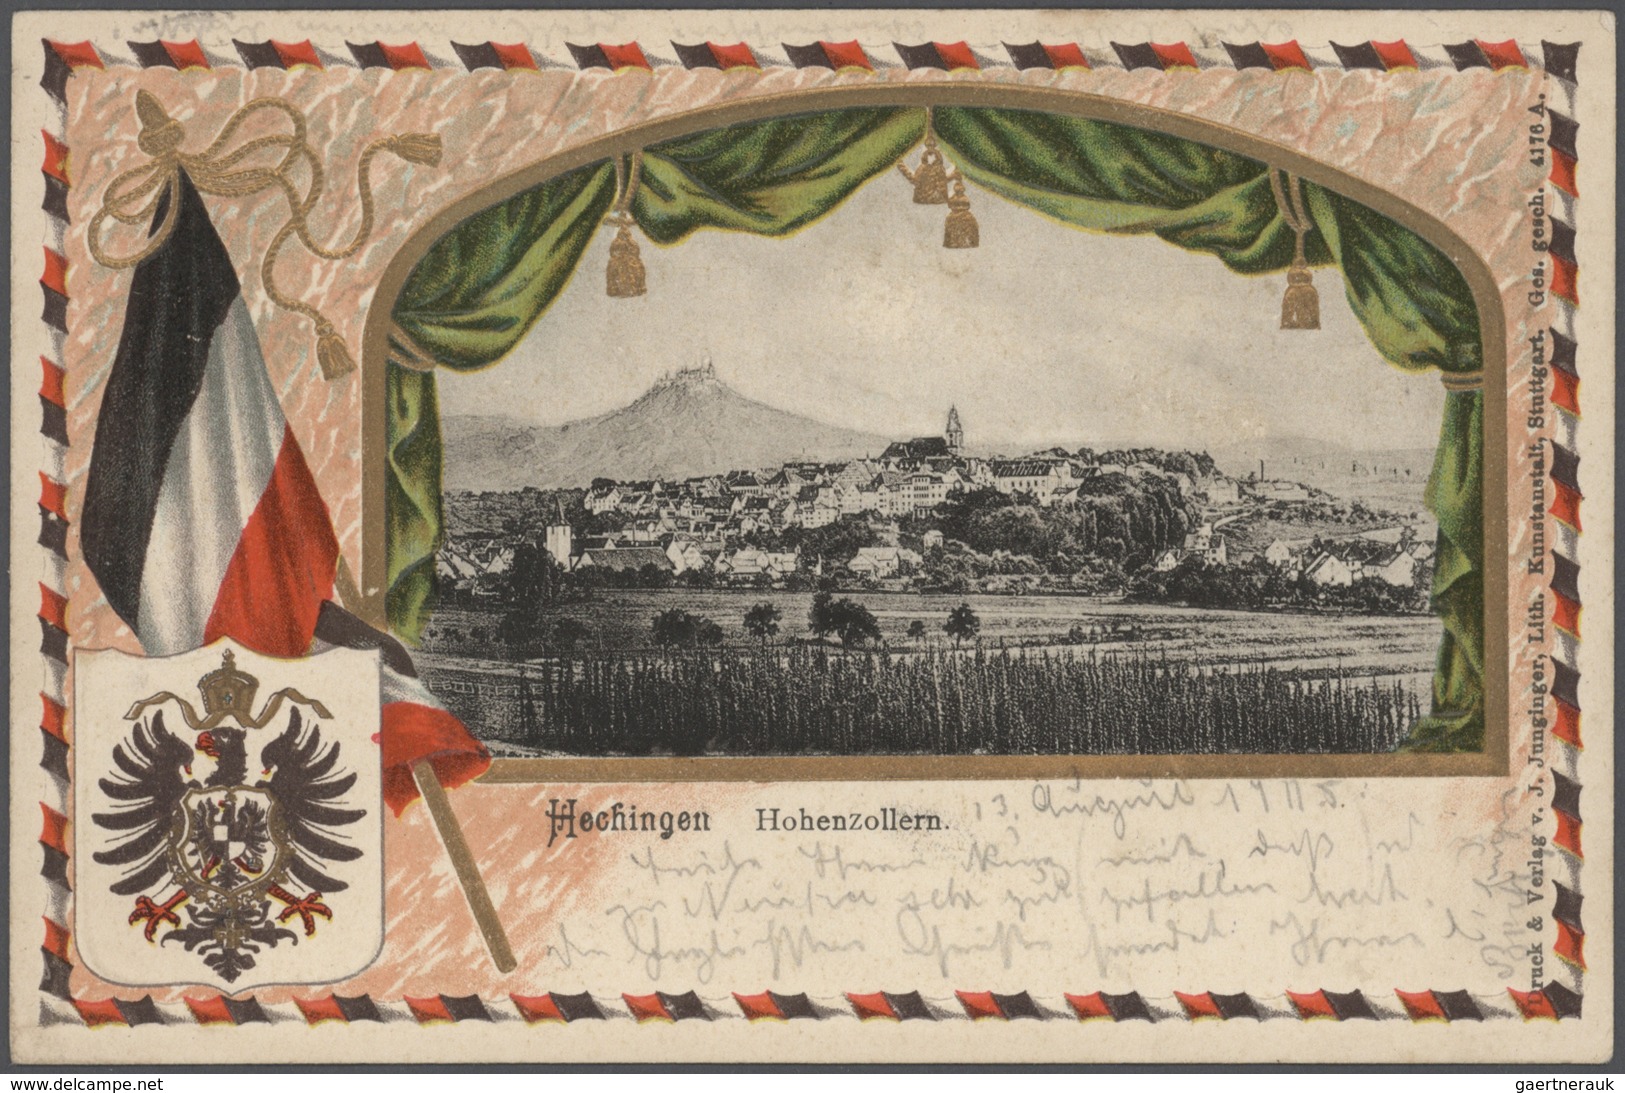 21684 Ansichtskarten: Baden-Württemberg: SCHWÄBISCHE ALB (alte PLZ 742 - 745), Schachtel mit über 850 meis